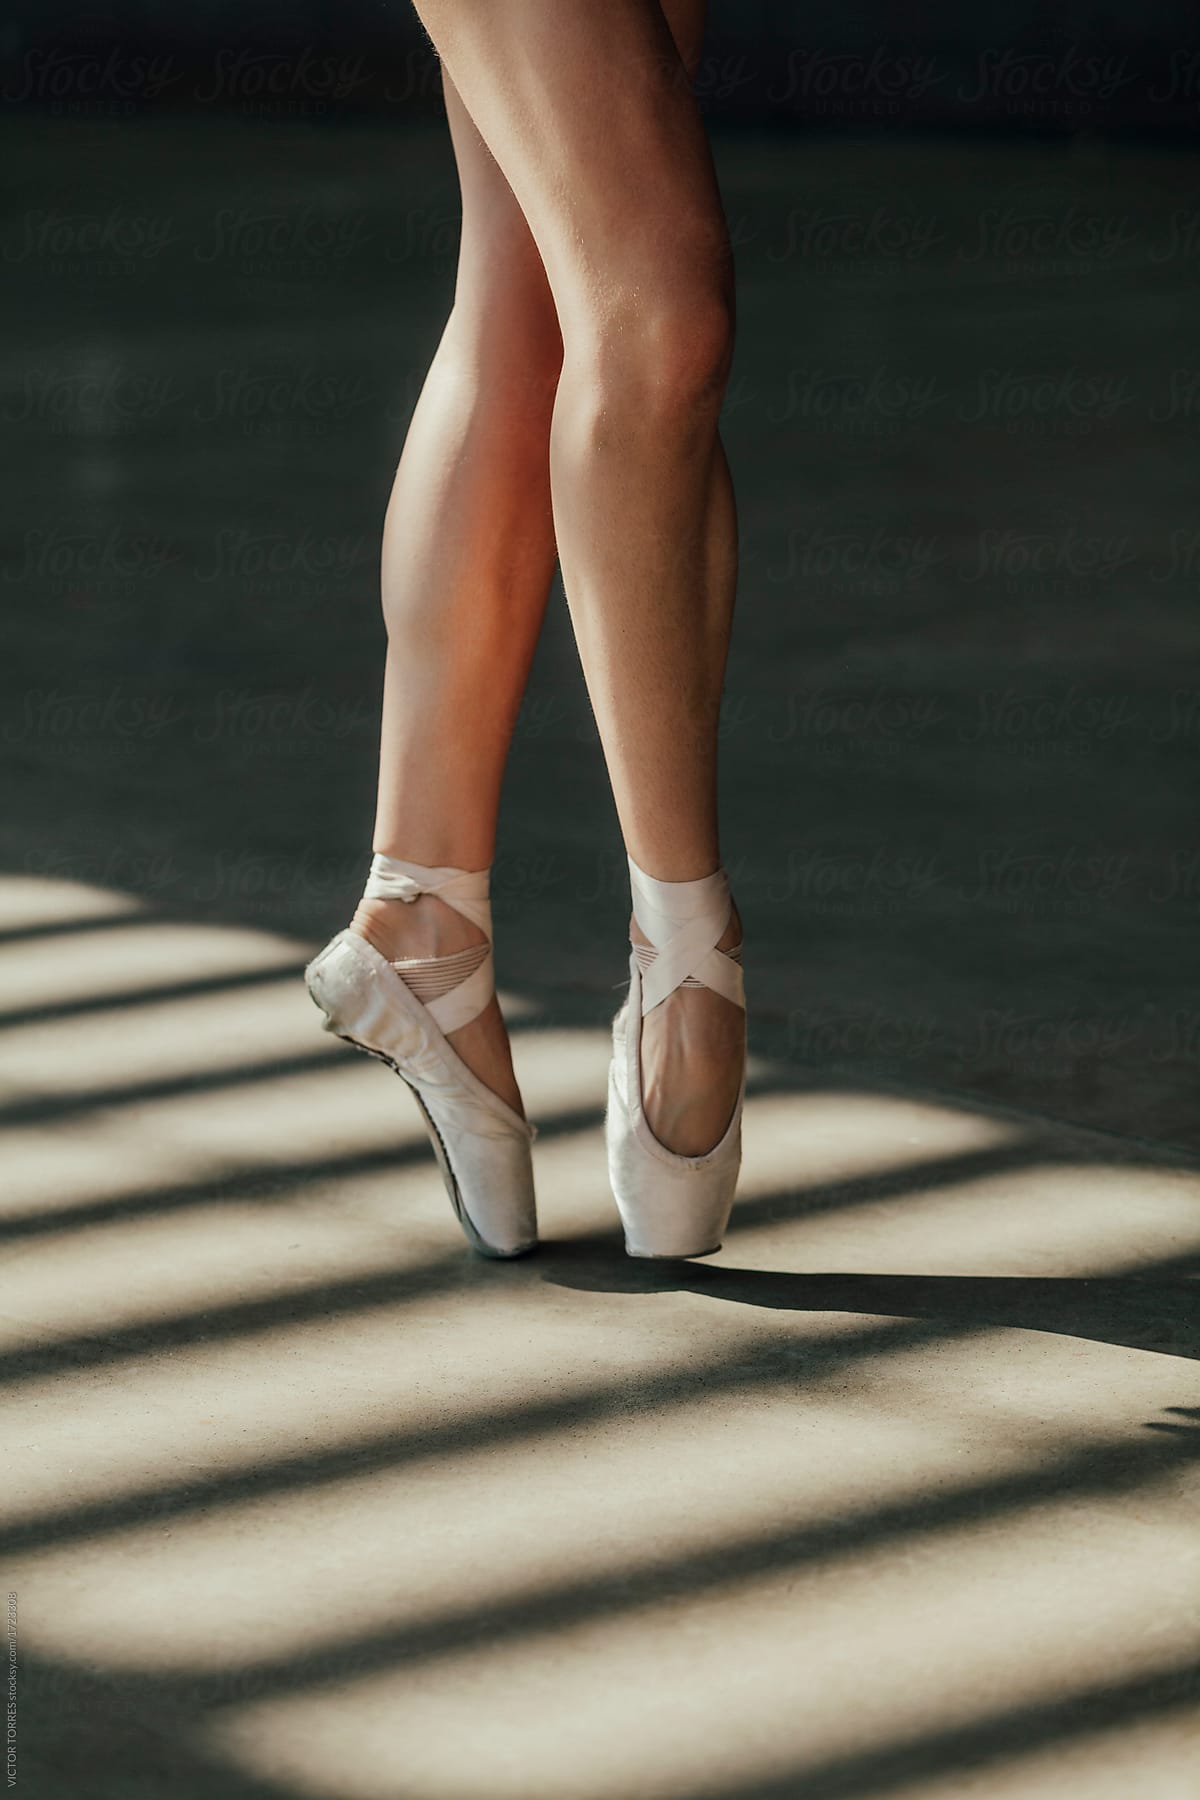 Crop ballerina in dancing shoes